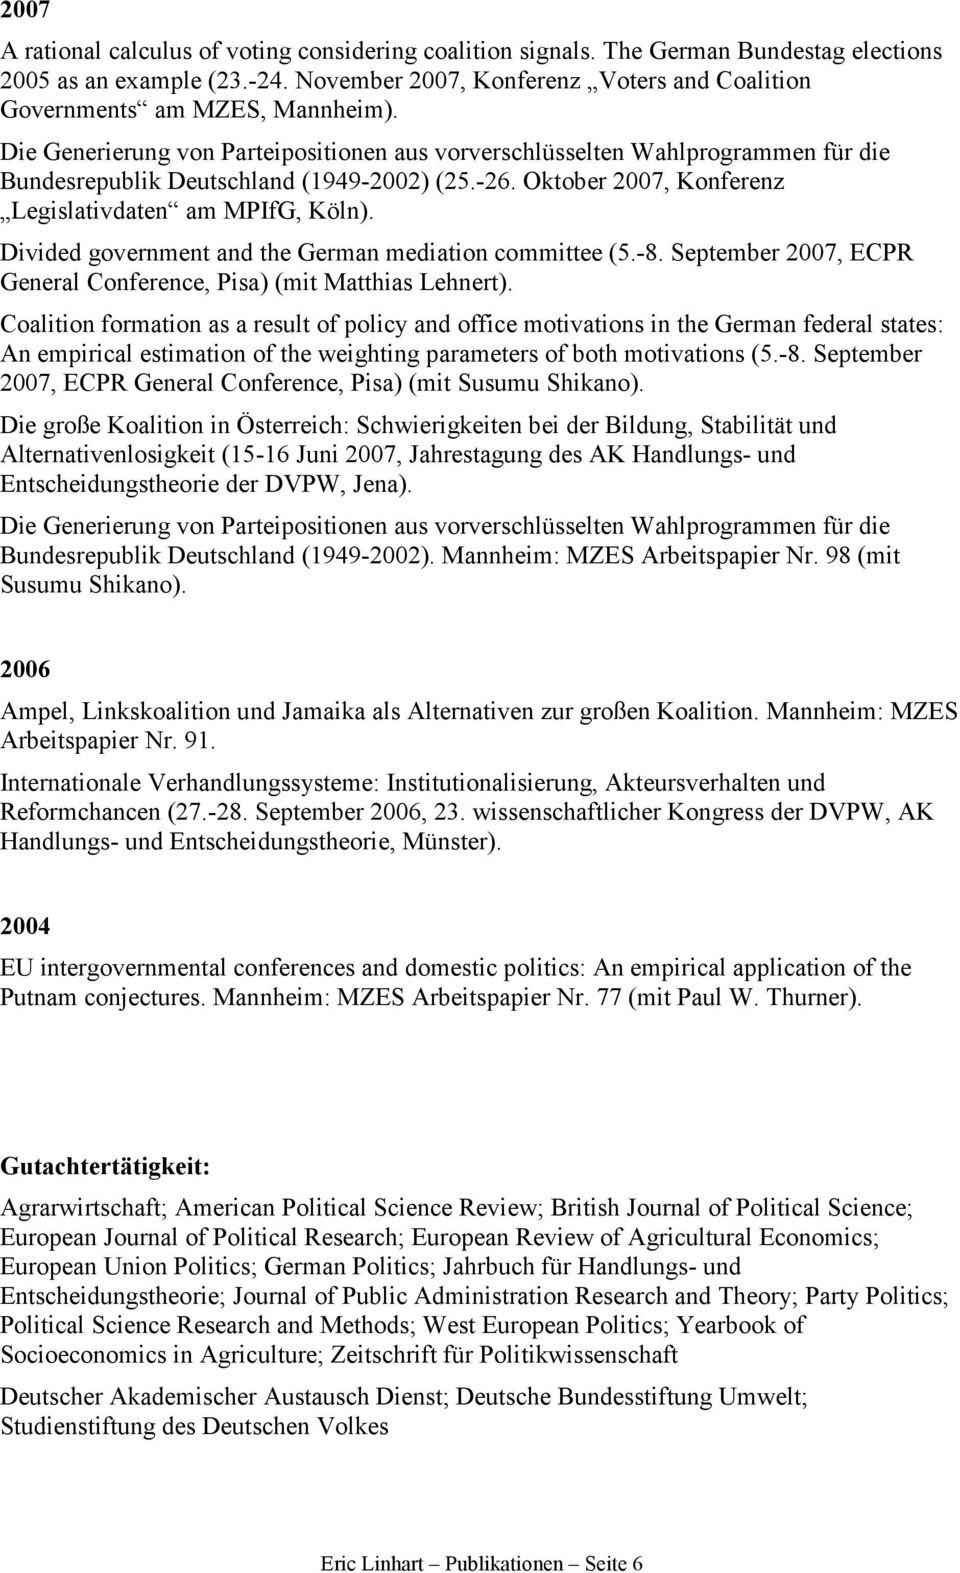 Die Generierung von Parteipositionen aus vorverschlüsselten Wahlprogrammen für die Bundesrepublik Deutschland (1949-2002) (25.-26. Oktober 2007, Konferenz Legislativdaten am MPIfG, Köln).